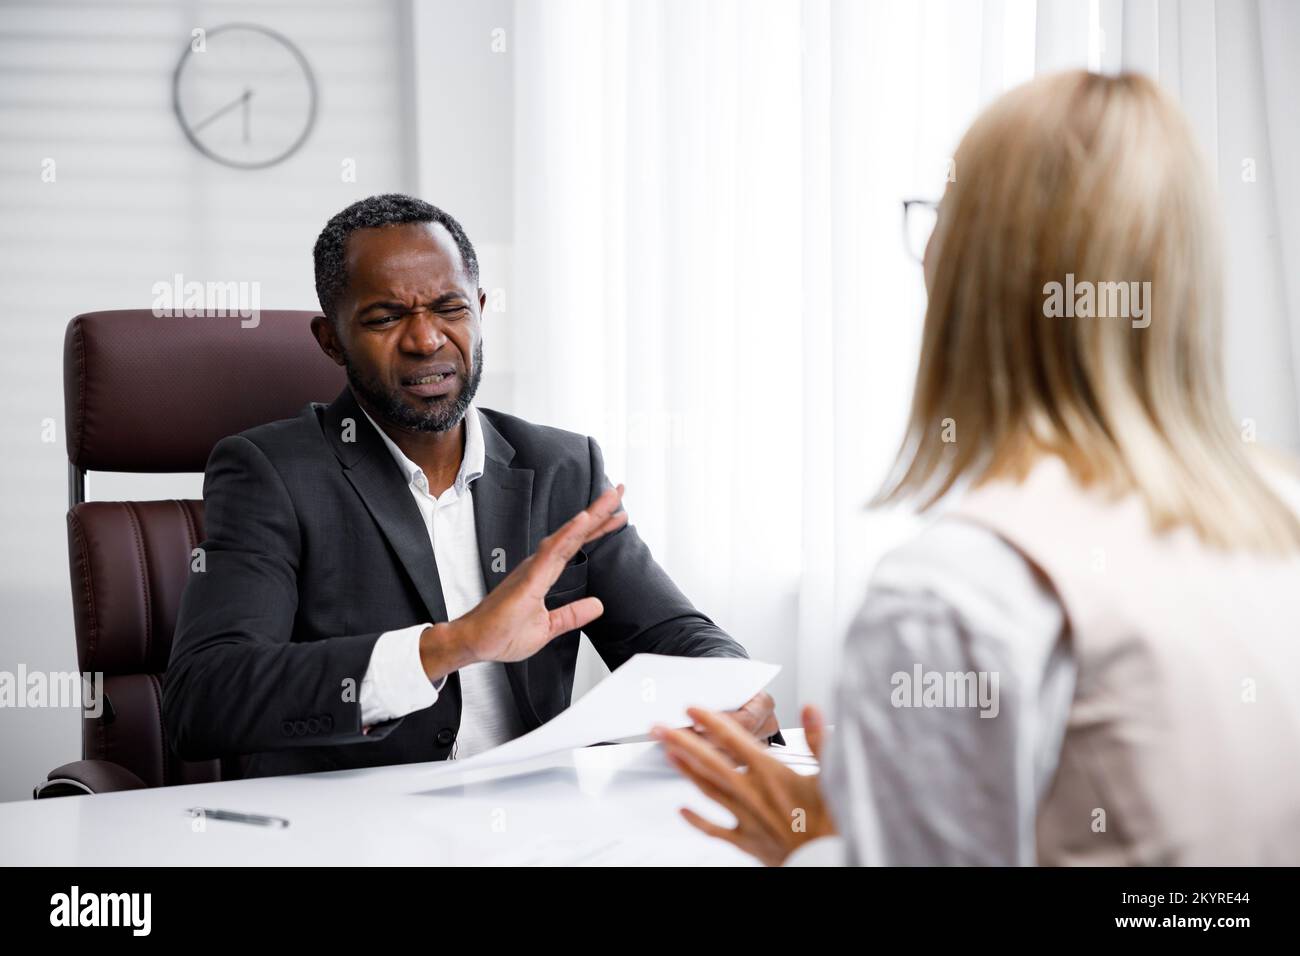 Einstellung, Vorstellungsgespräch. Ein afroamerikanischer Geschäftsführer mittleren Alters, der ein Vorstellungsgespräch in einem hellen Büro abhält. Er sieht sich den Lebenslauf an, er mag ihn nicht Stockfoto